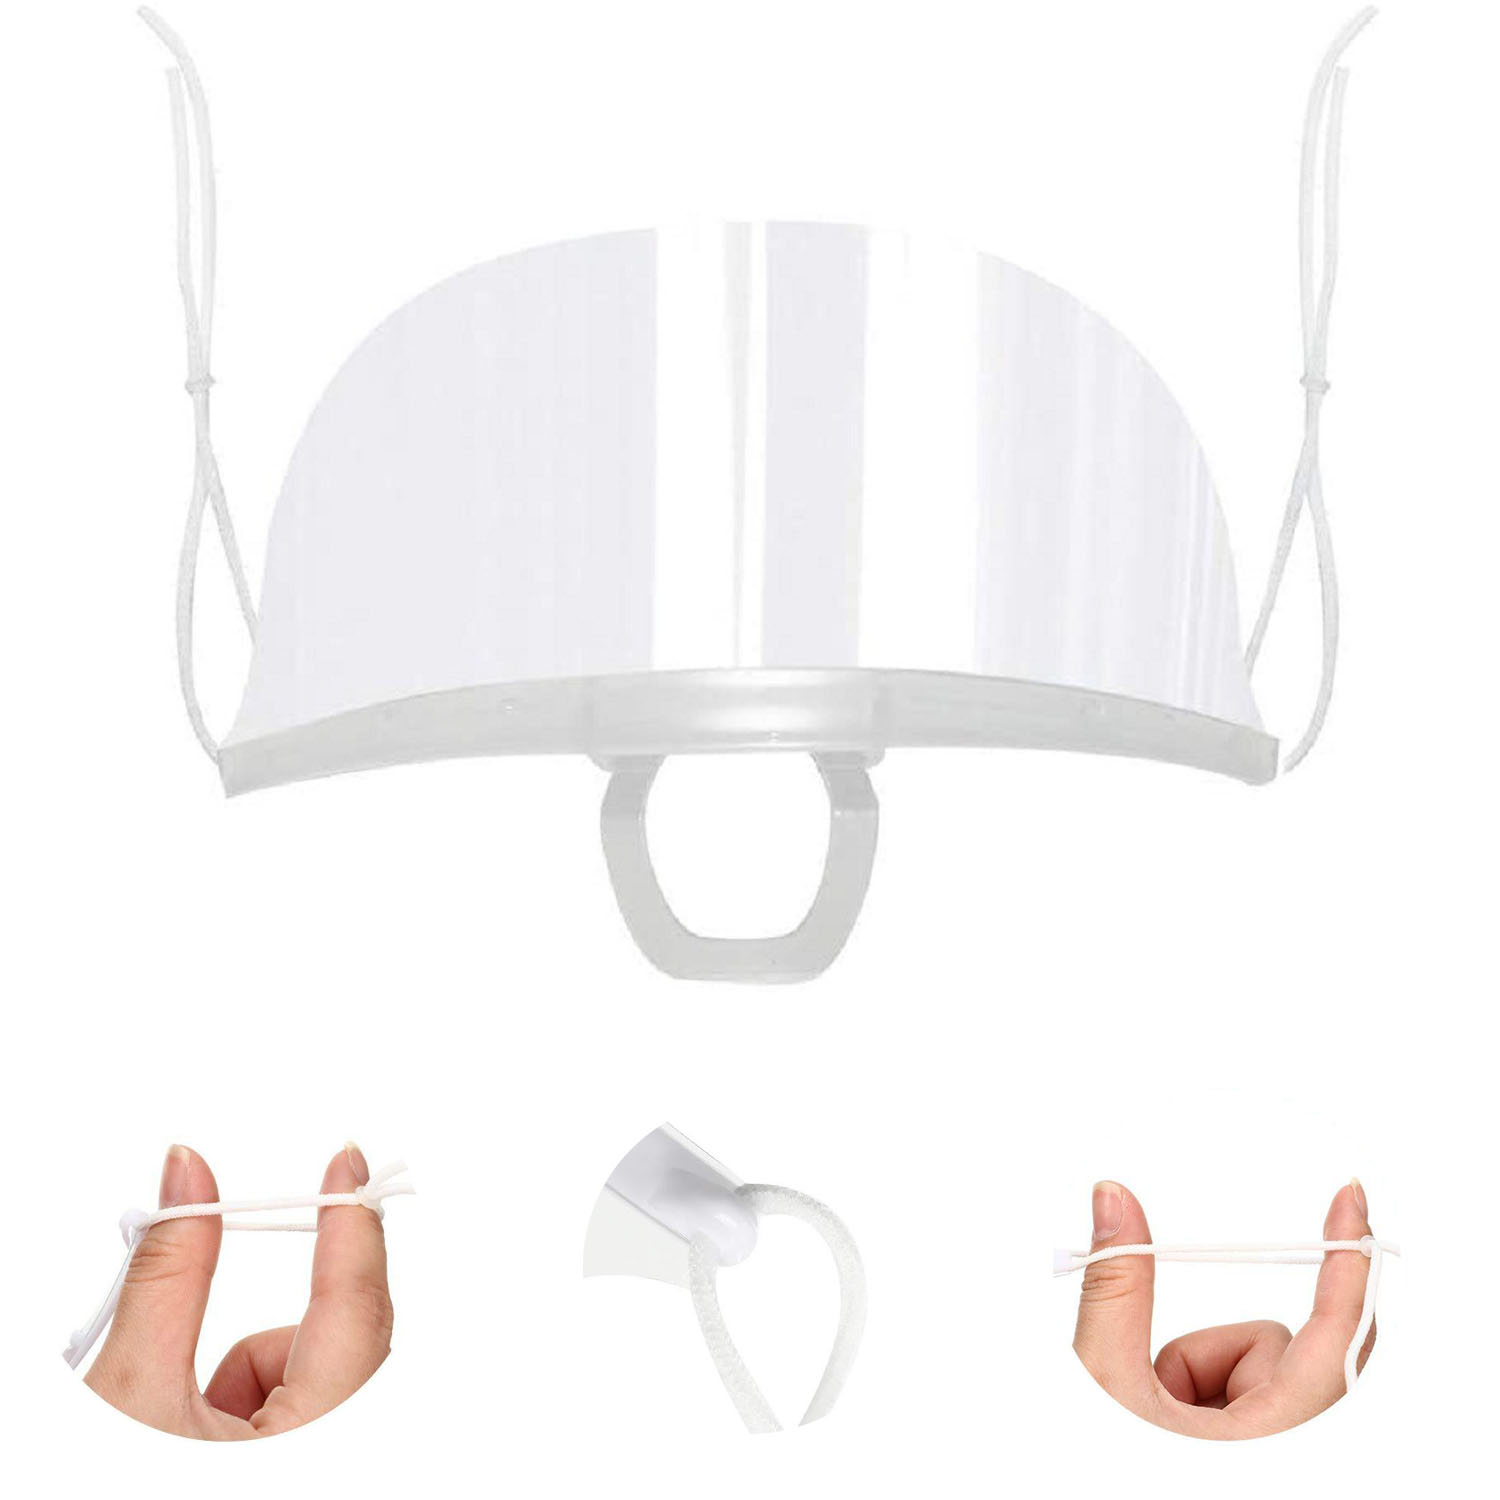 5 piezas transparente transparente máscara sanitaria antivaho cara protector bucal Spit Guard reutilizable Hotel Chef camarero plástico cocina restaurante máscaras